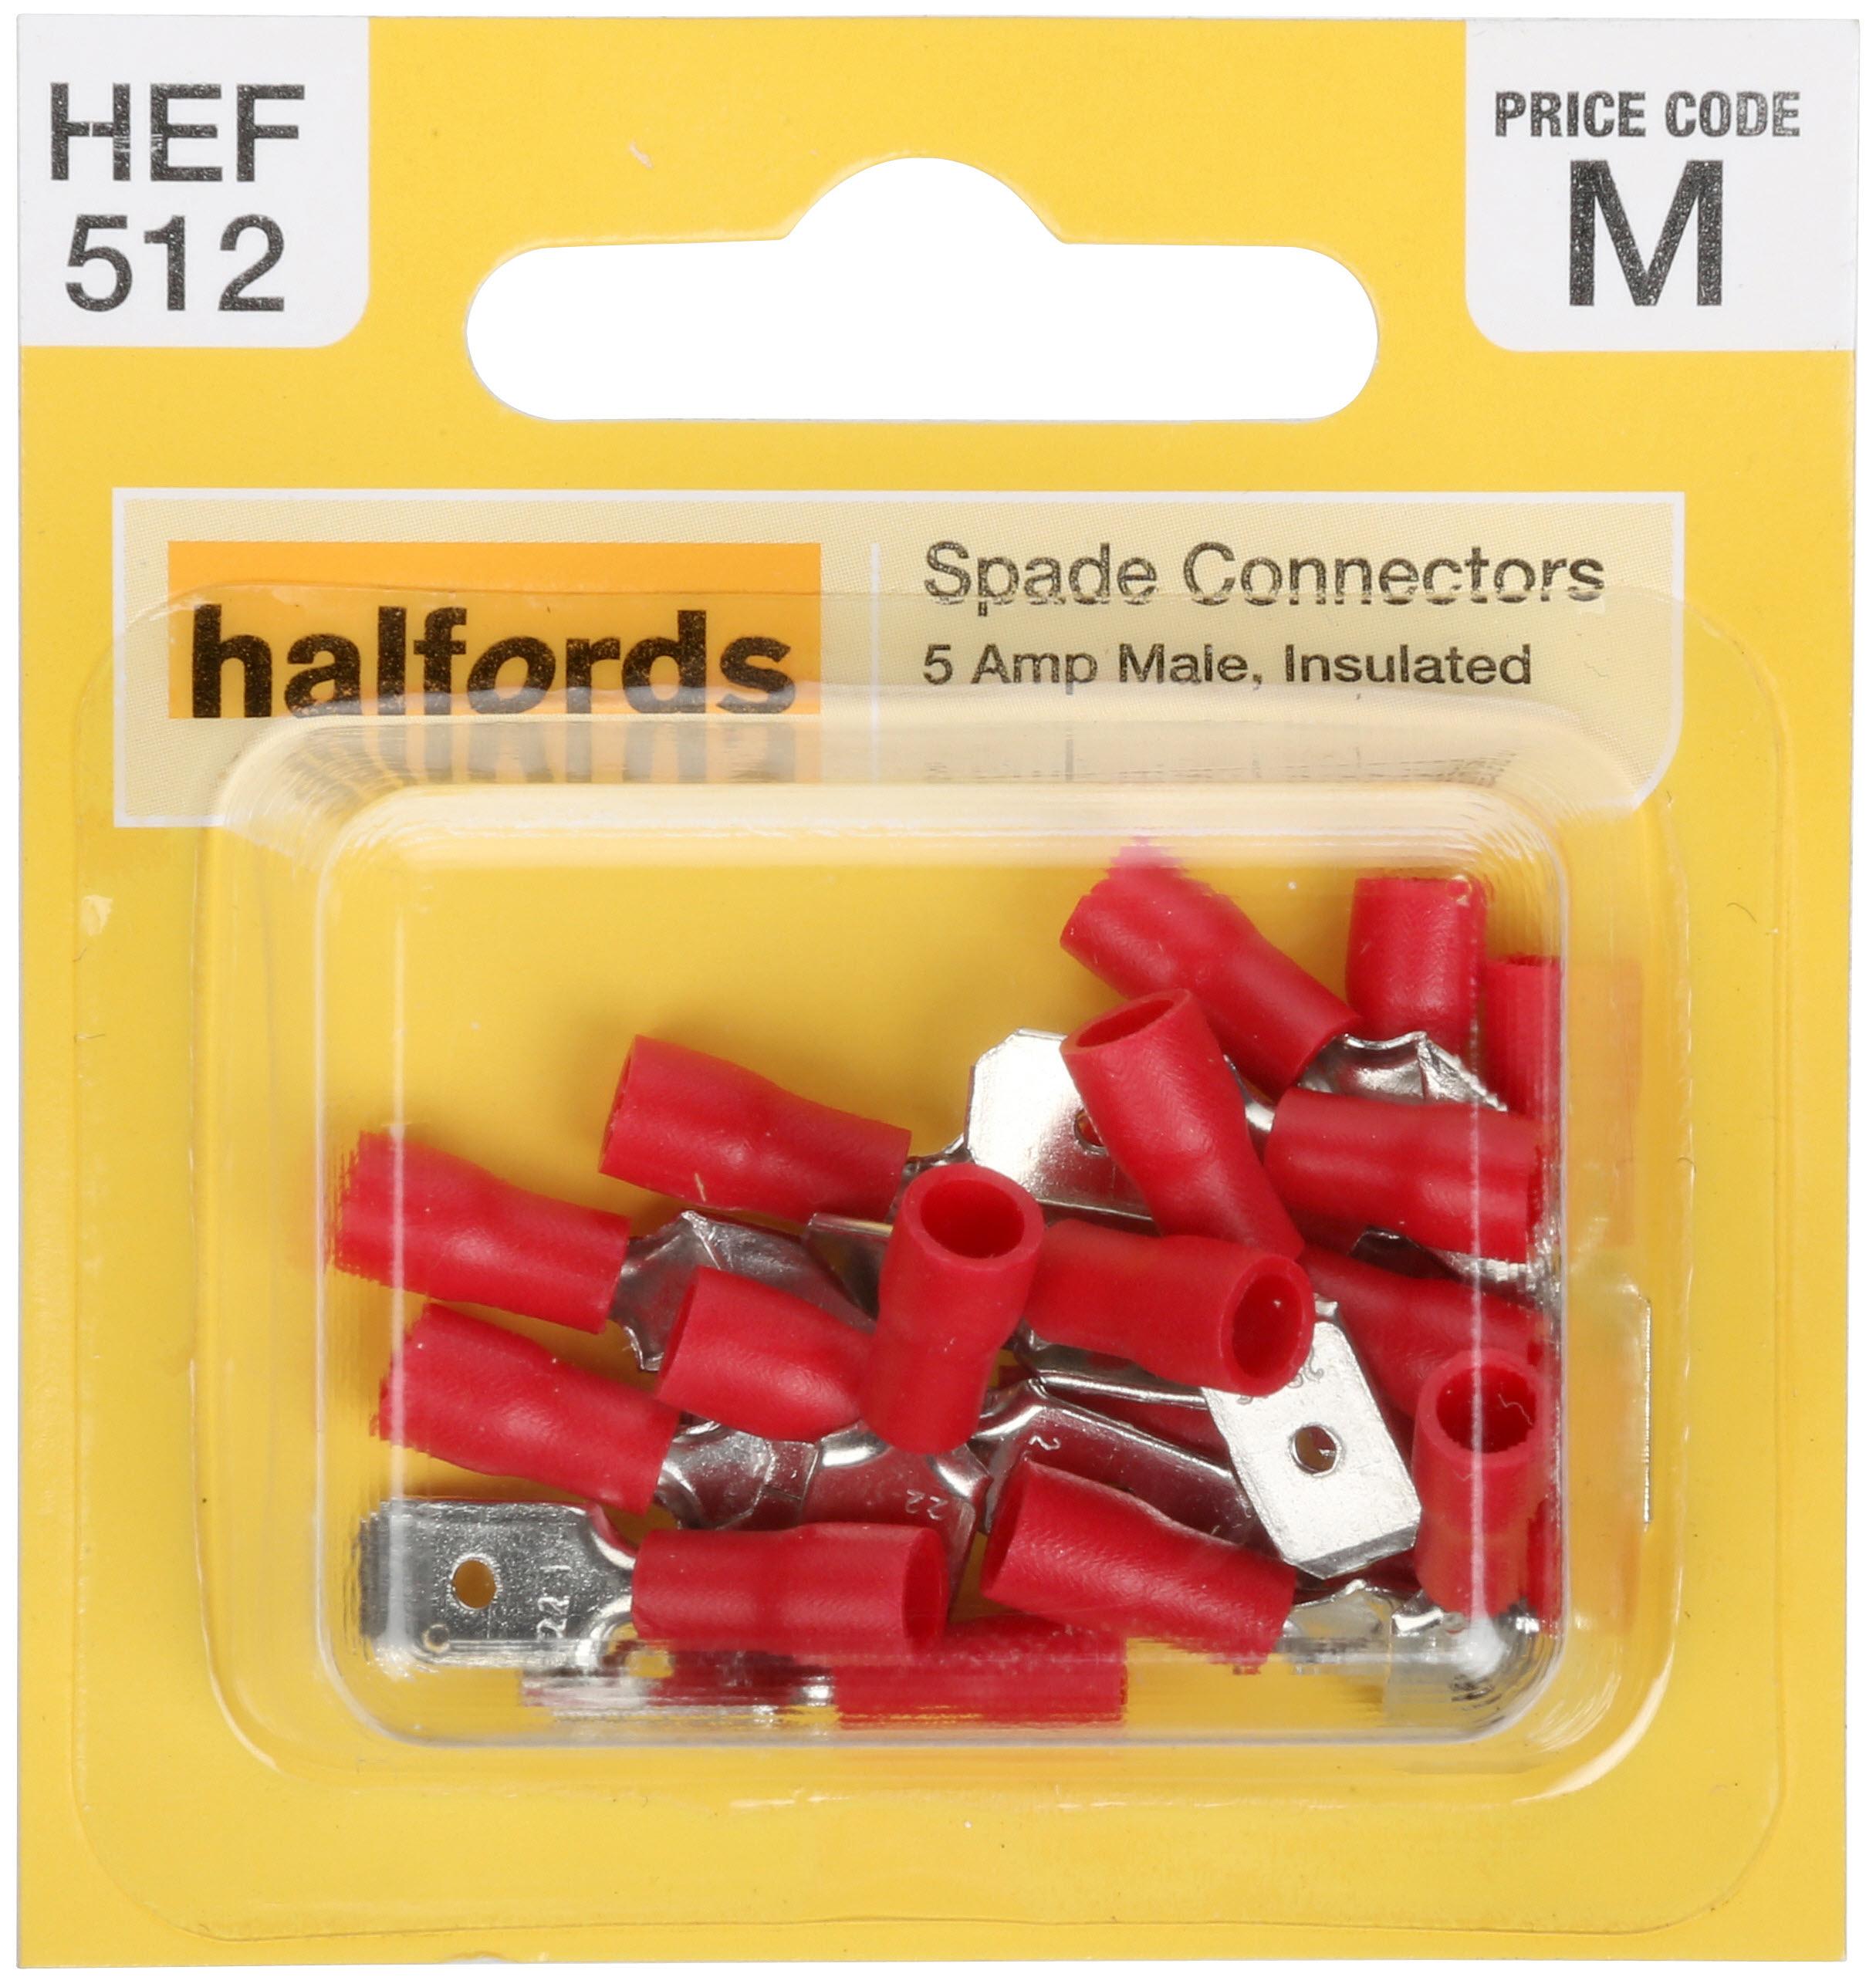 Halfords Spade Connectors (Hef512) 5 Amp/Male